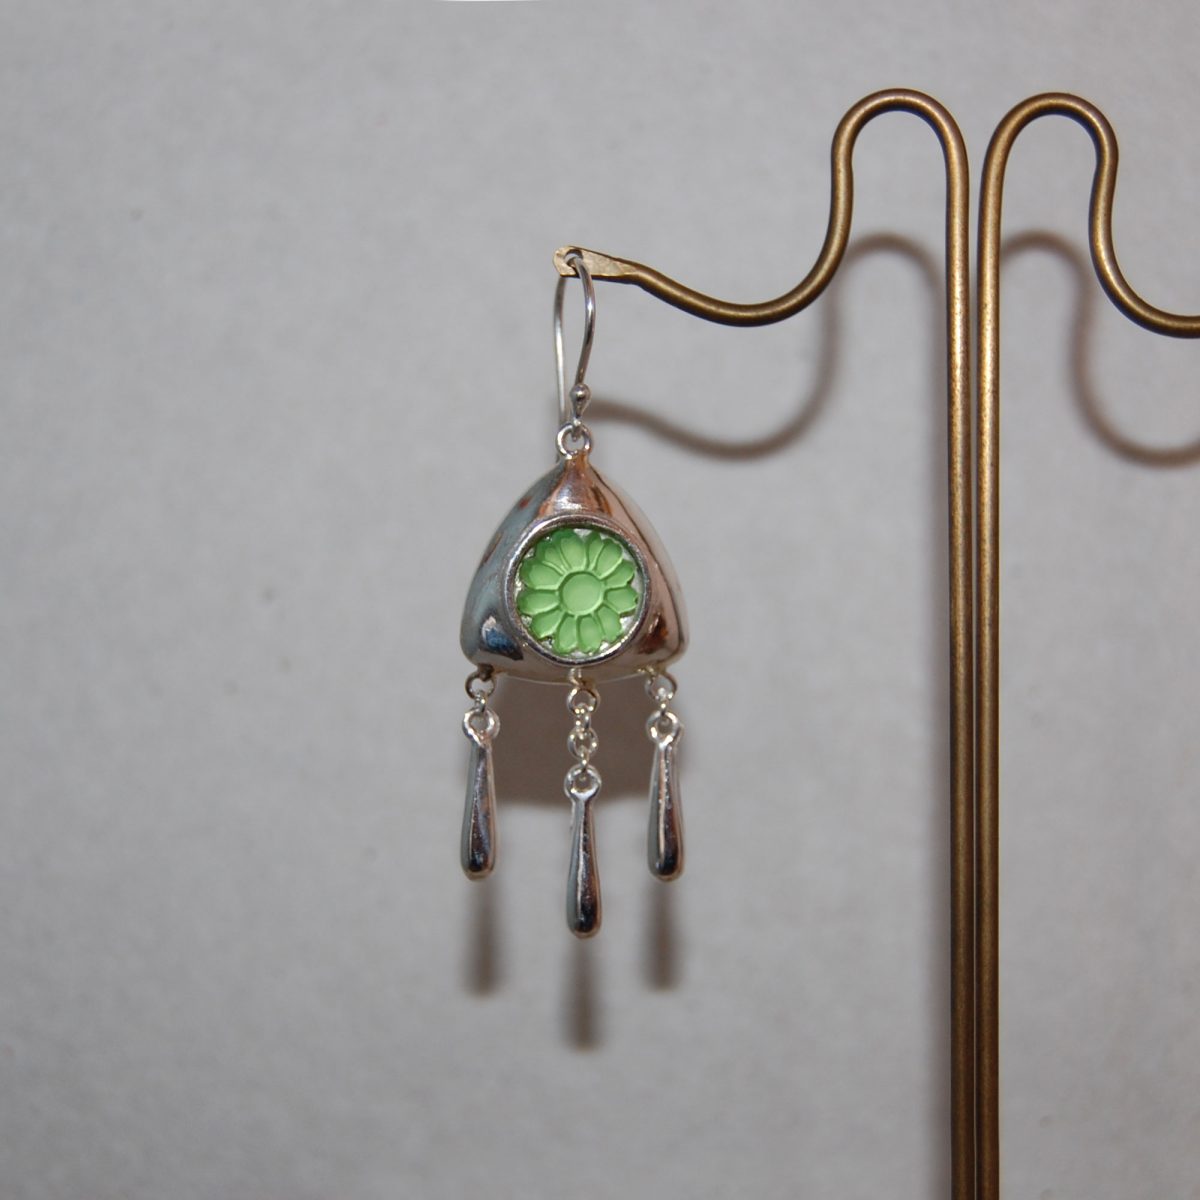 Kreitto jewels earrings